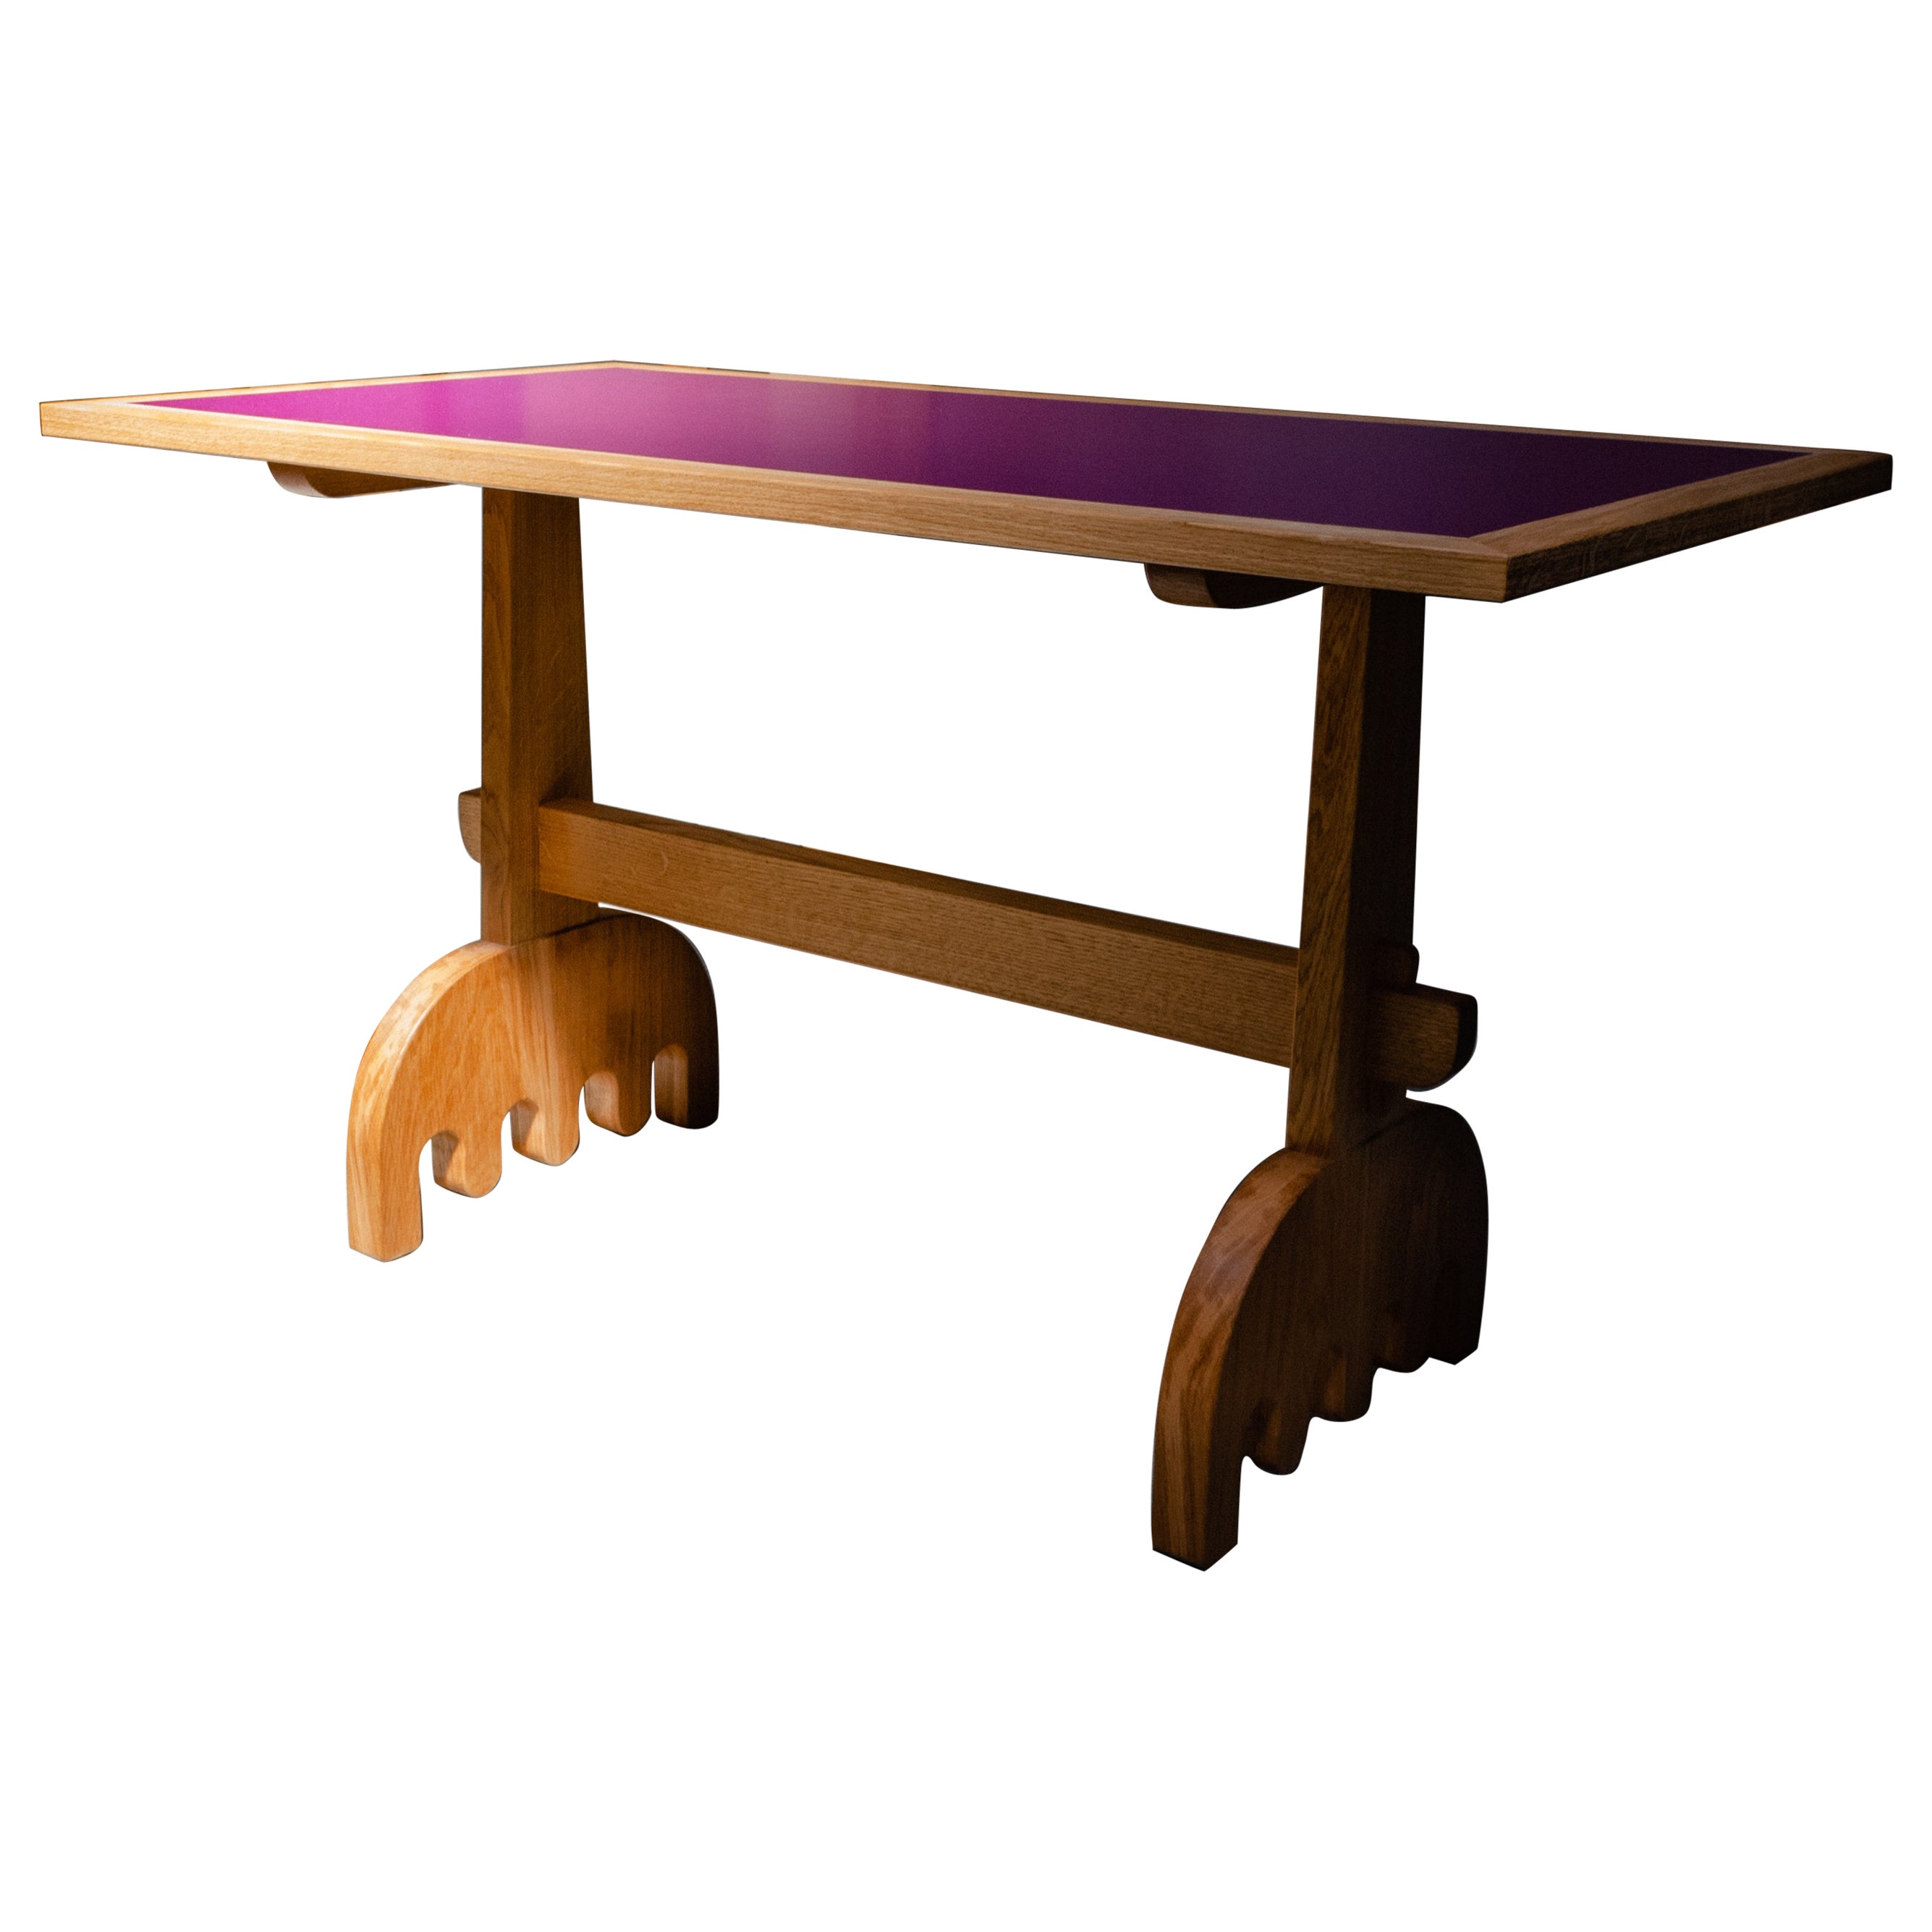 Table moderne organique en chêne massif et plateau en formica rose, fabriquée à la main par Loose Fit, Royaume-Uni en vente